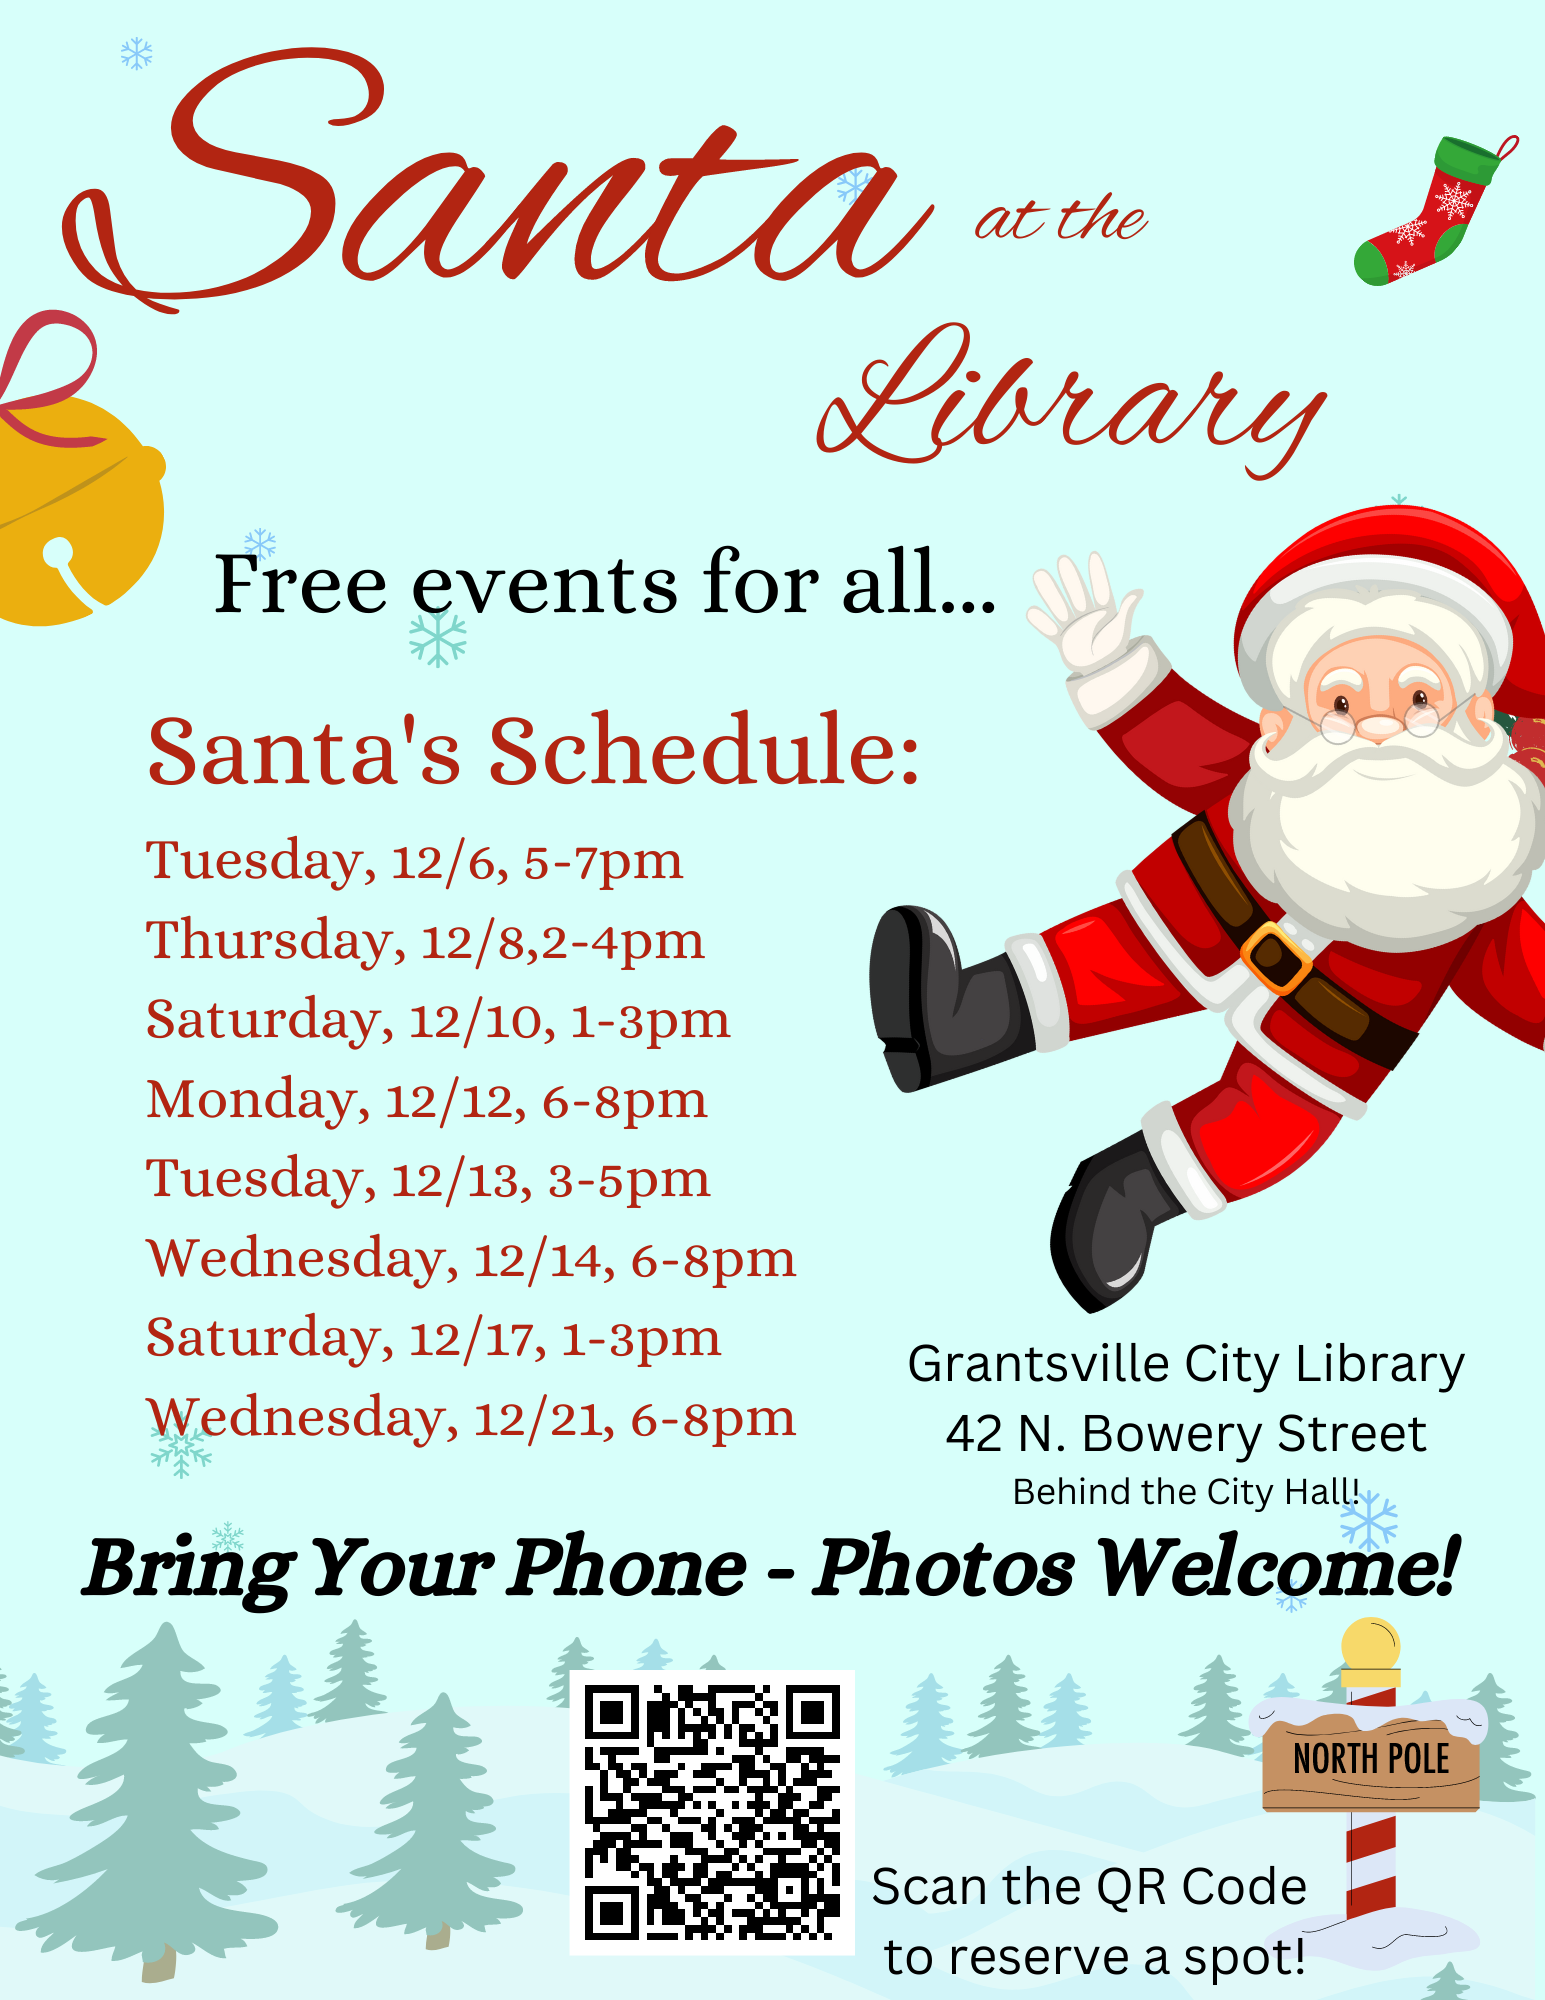 Santa visits at the Library